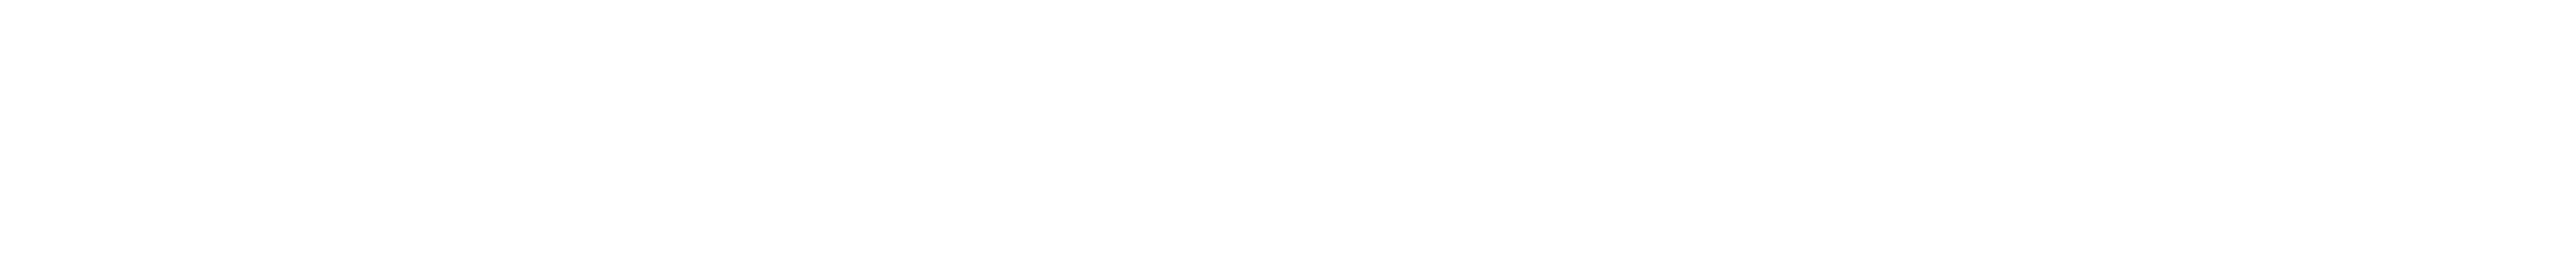 kavanagh-logos.png